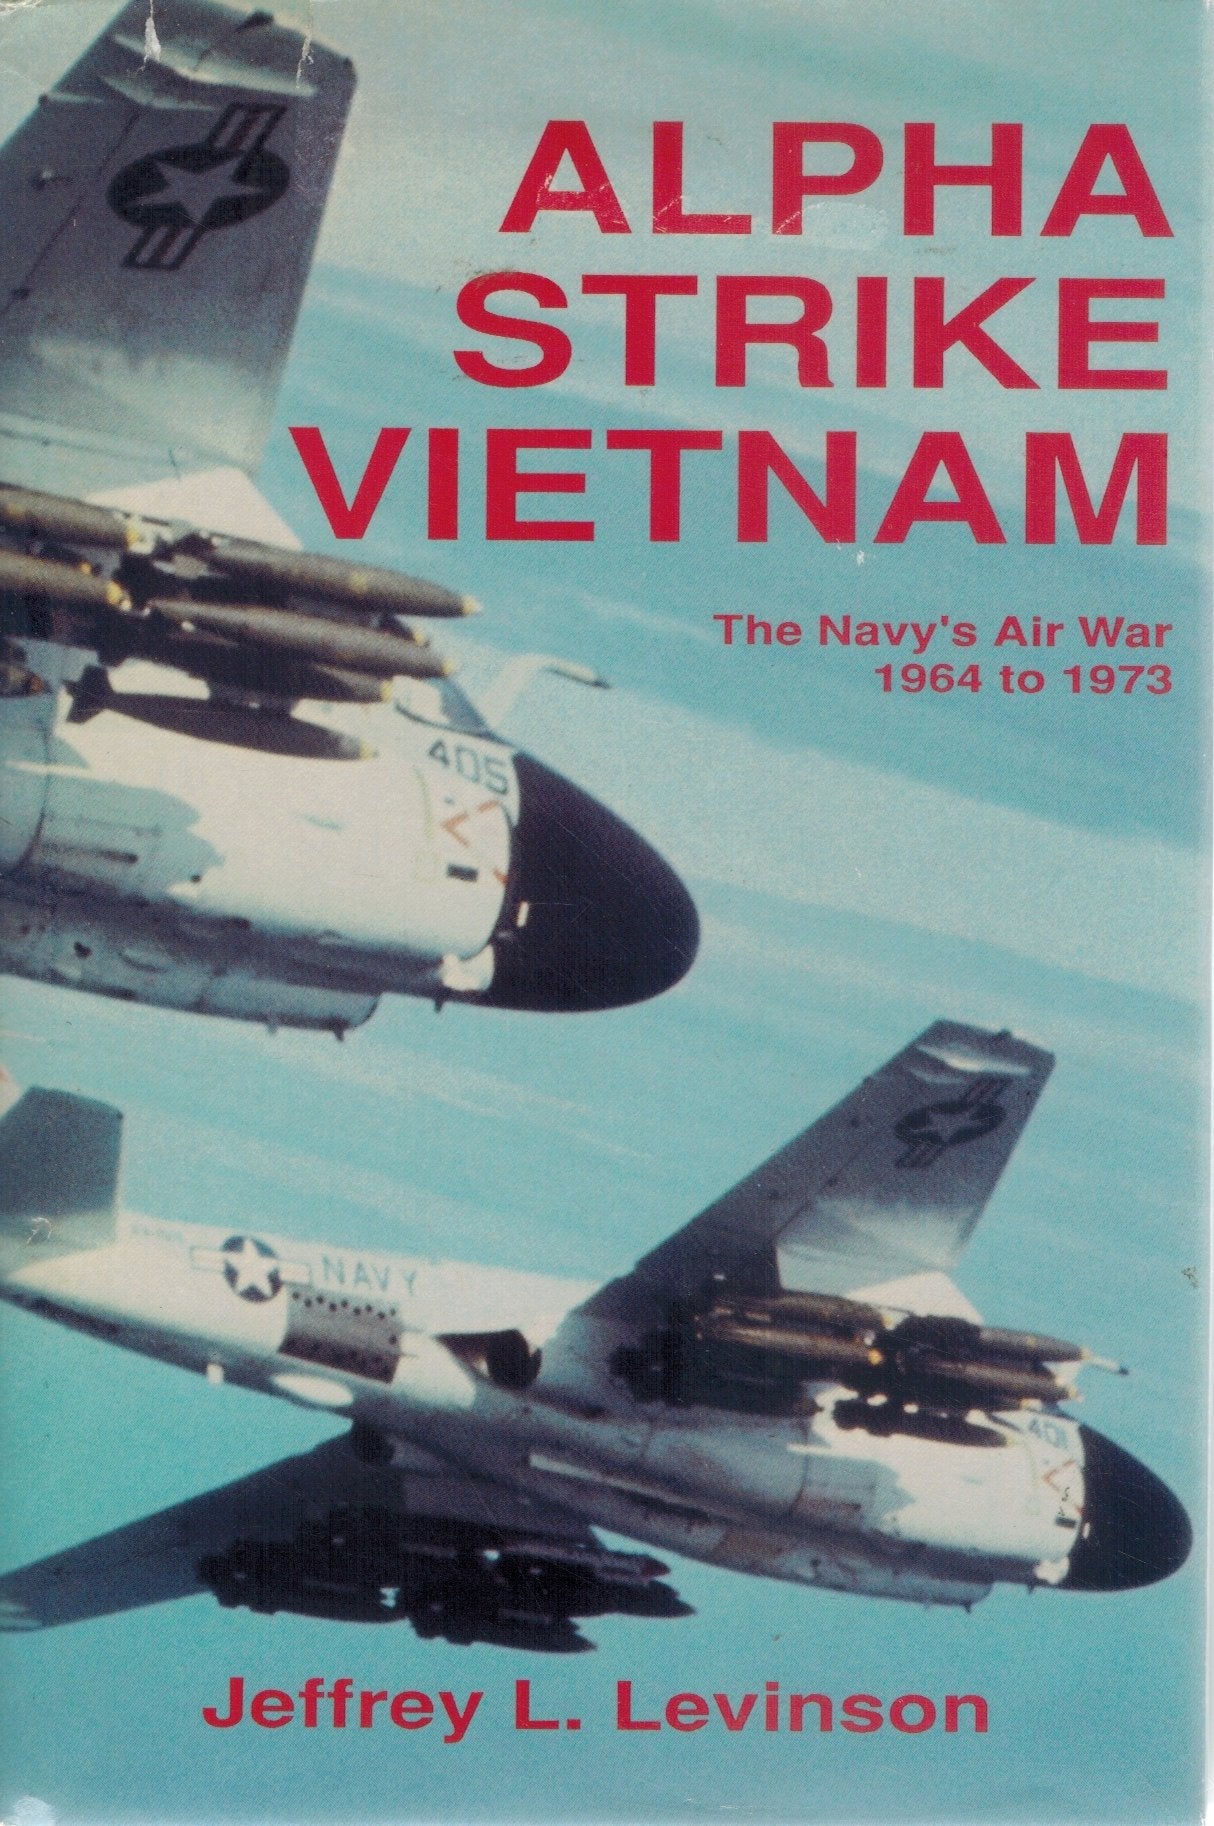 ALPHA STRIKE VIETNAM The Navy's Air War, 1964 to 1973  by Levinson, Jeffrey L